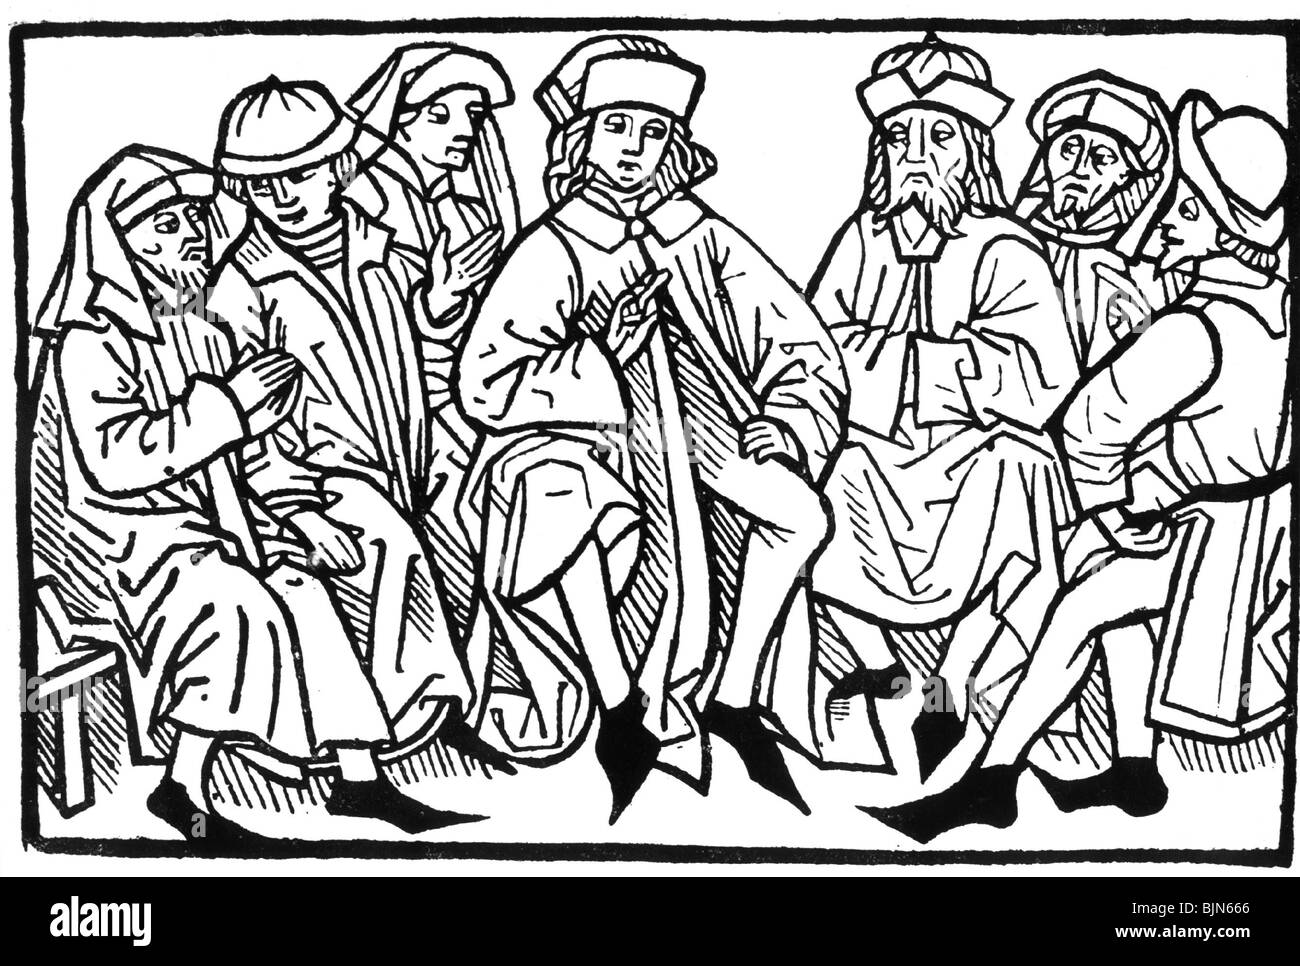 Wissenschaft, Universität, Liberale Künste, vertreten durch sieben streitige Gelehrte, Holzschnitt, Augsburg, Deutschland, ca. 1480, Stockfoto